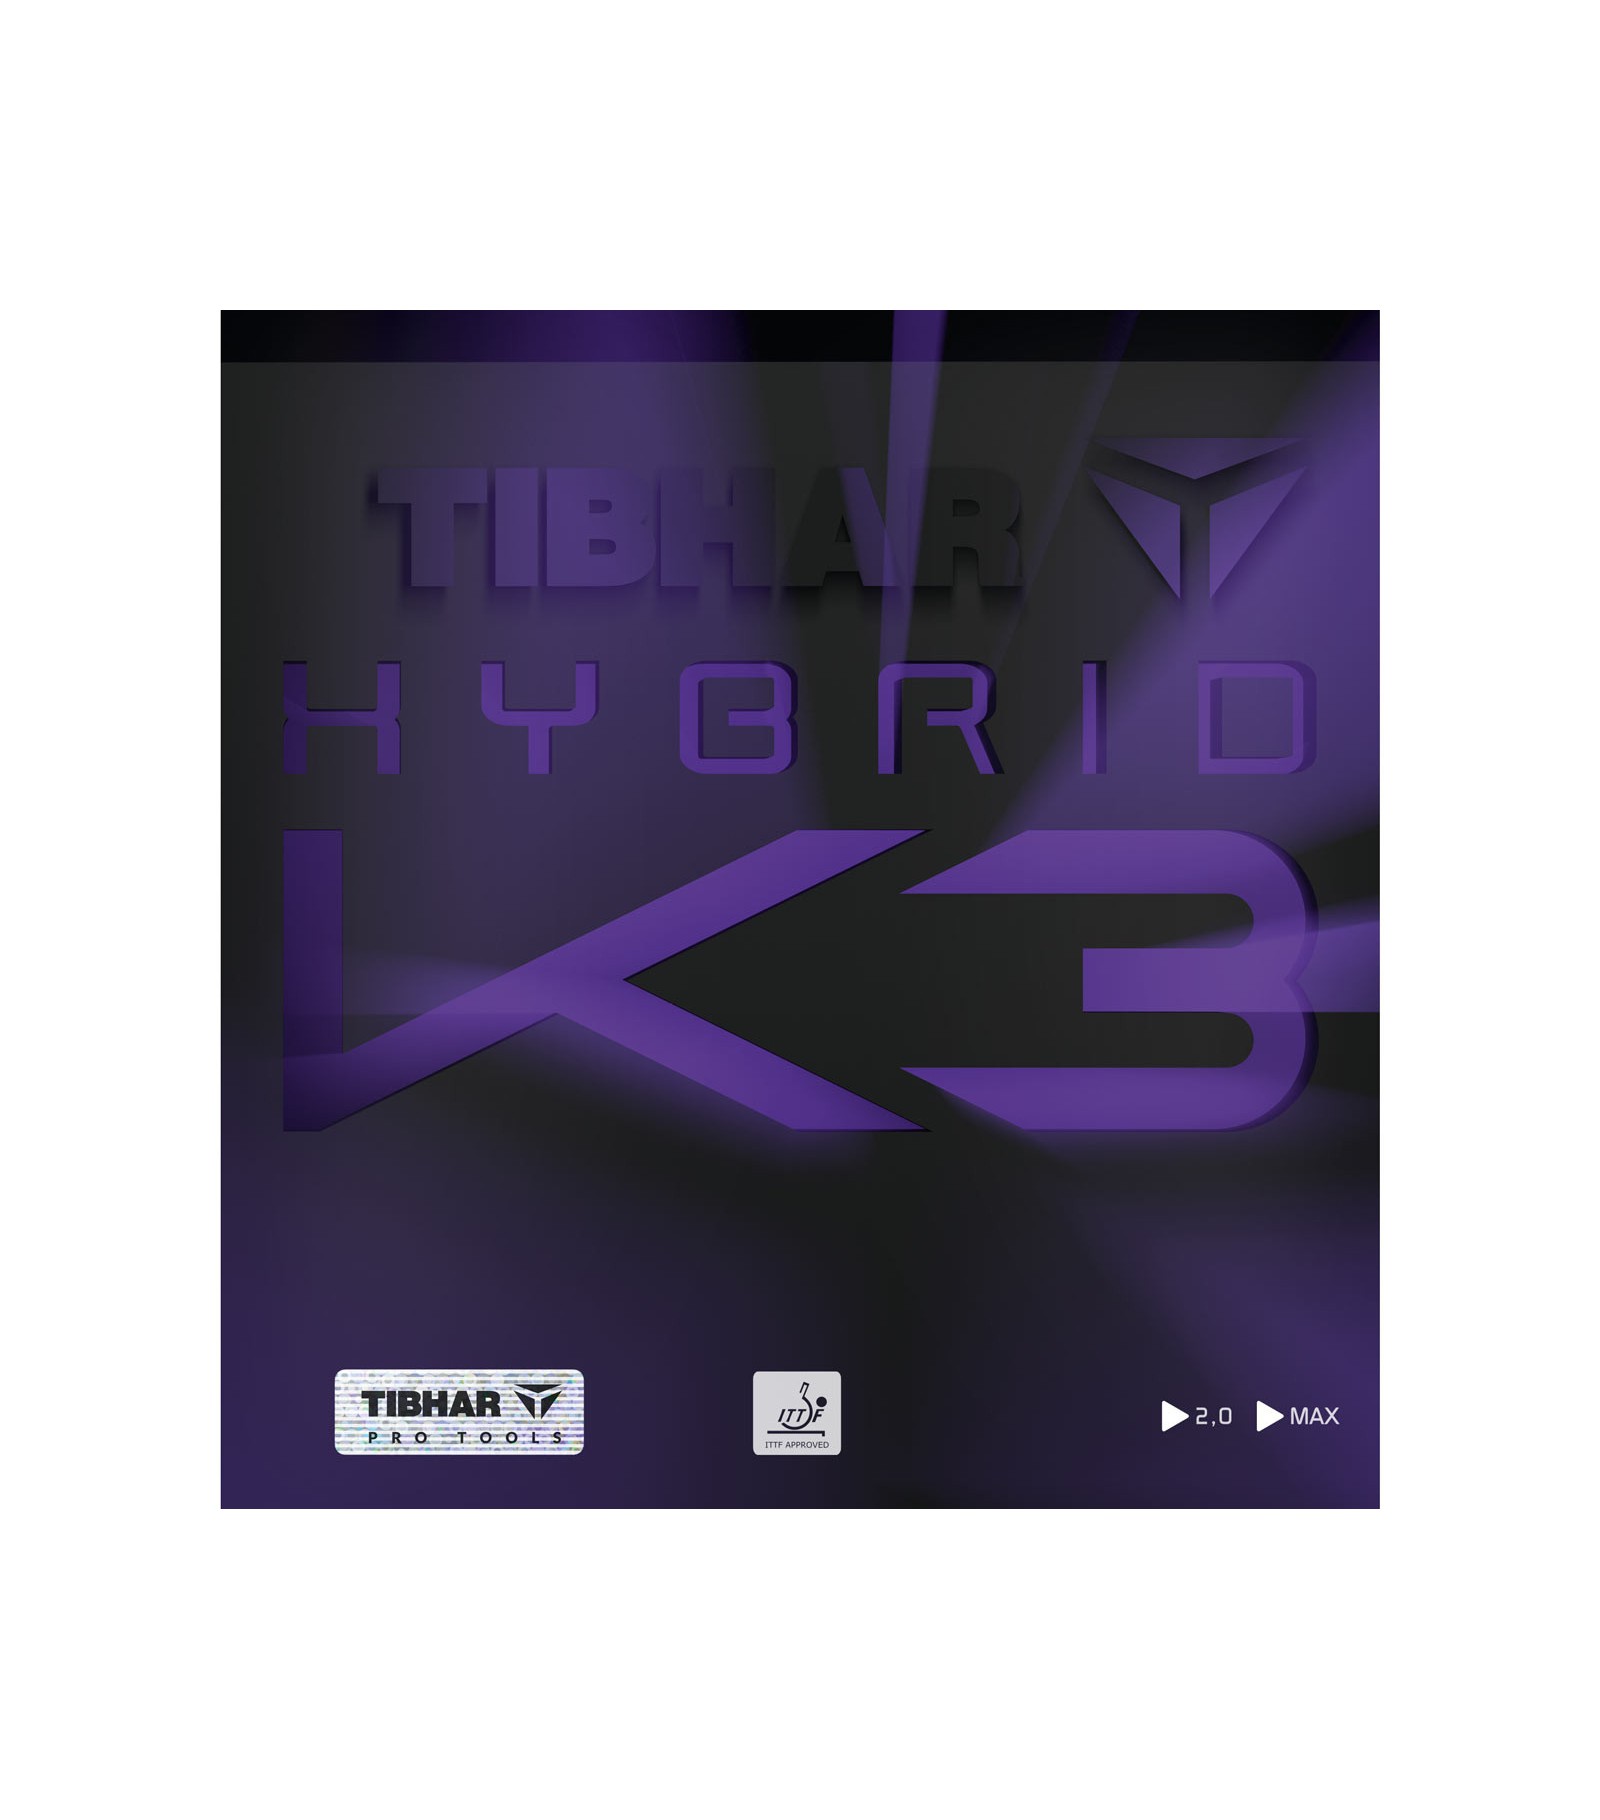 Hybrid k3